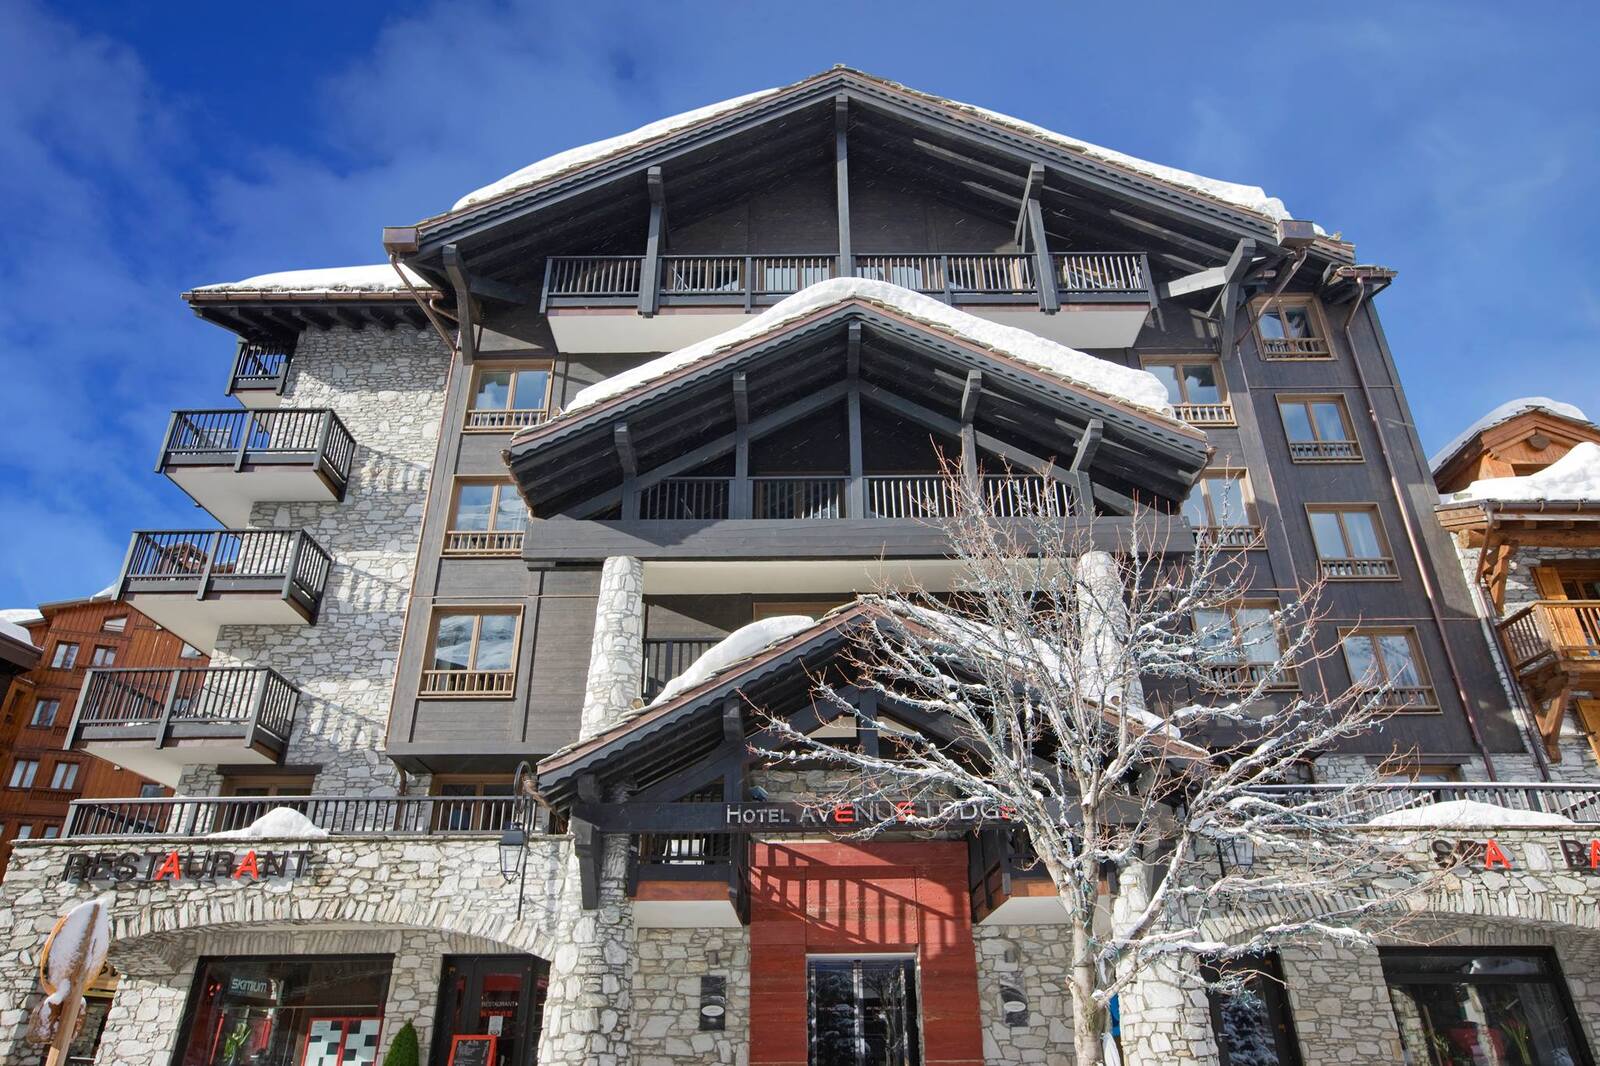 Avenue Lodge Hotel - Val d'Isère